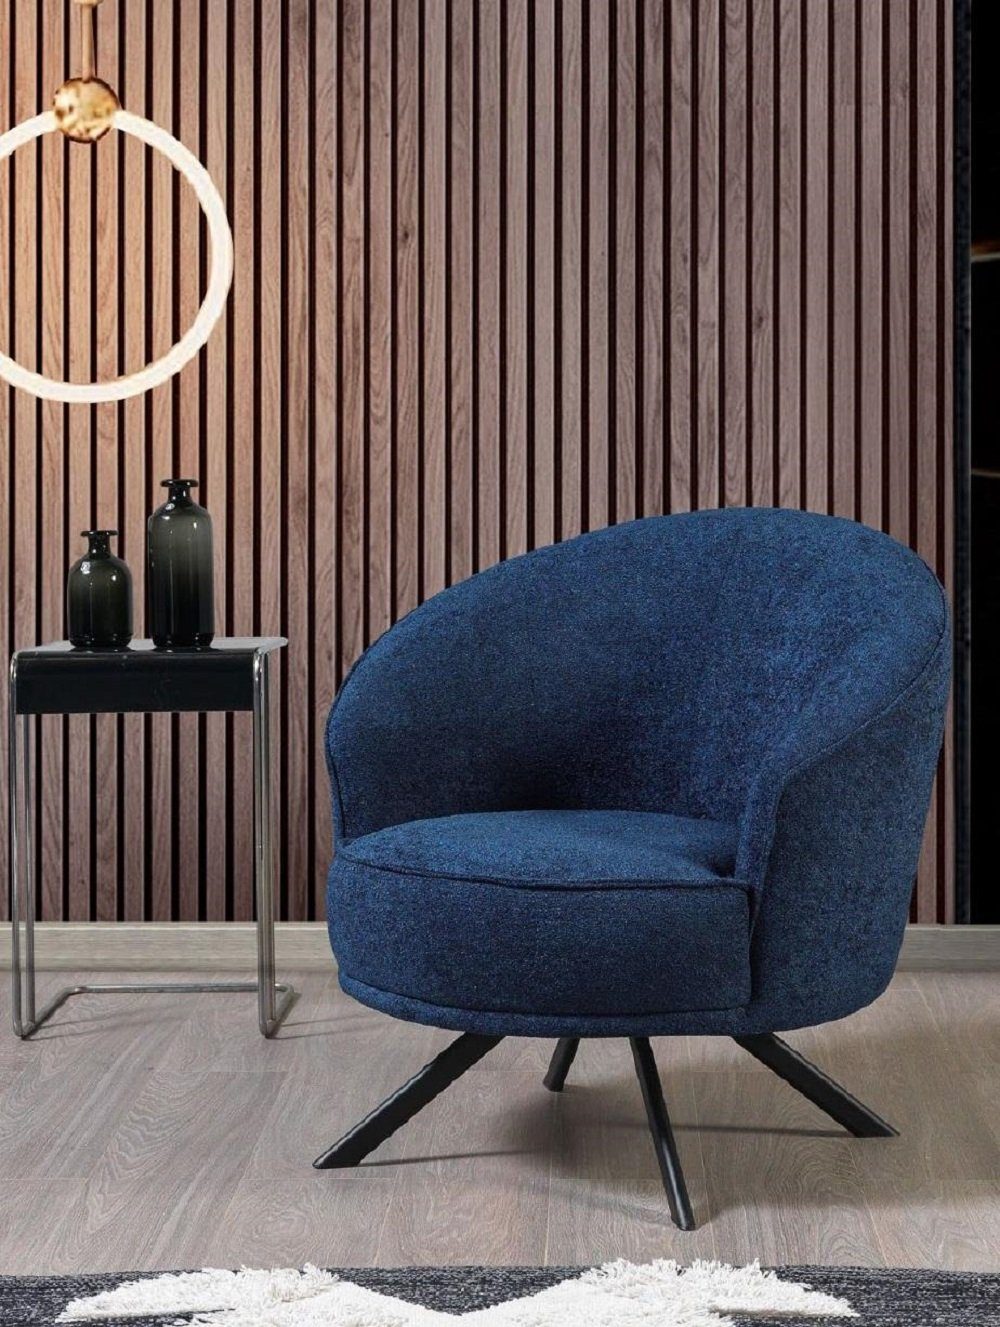 JVmoebel Sessel Sessel Couch Polster Einsitzer Couchen Textil Textil Möbel Luxus Sofa